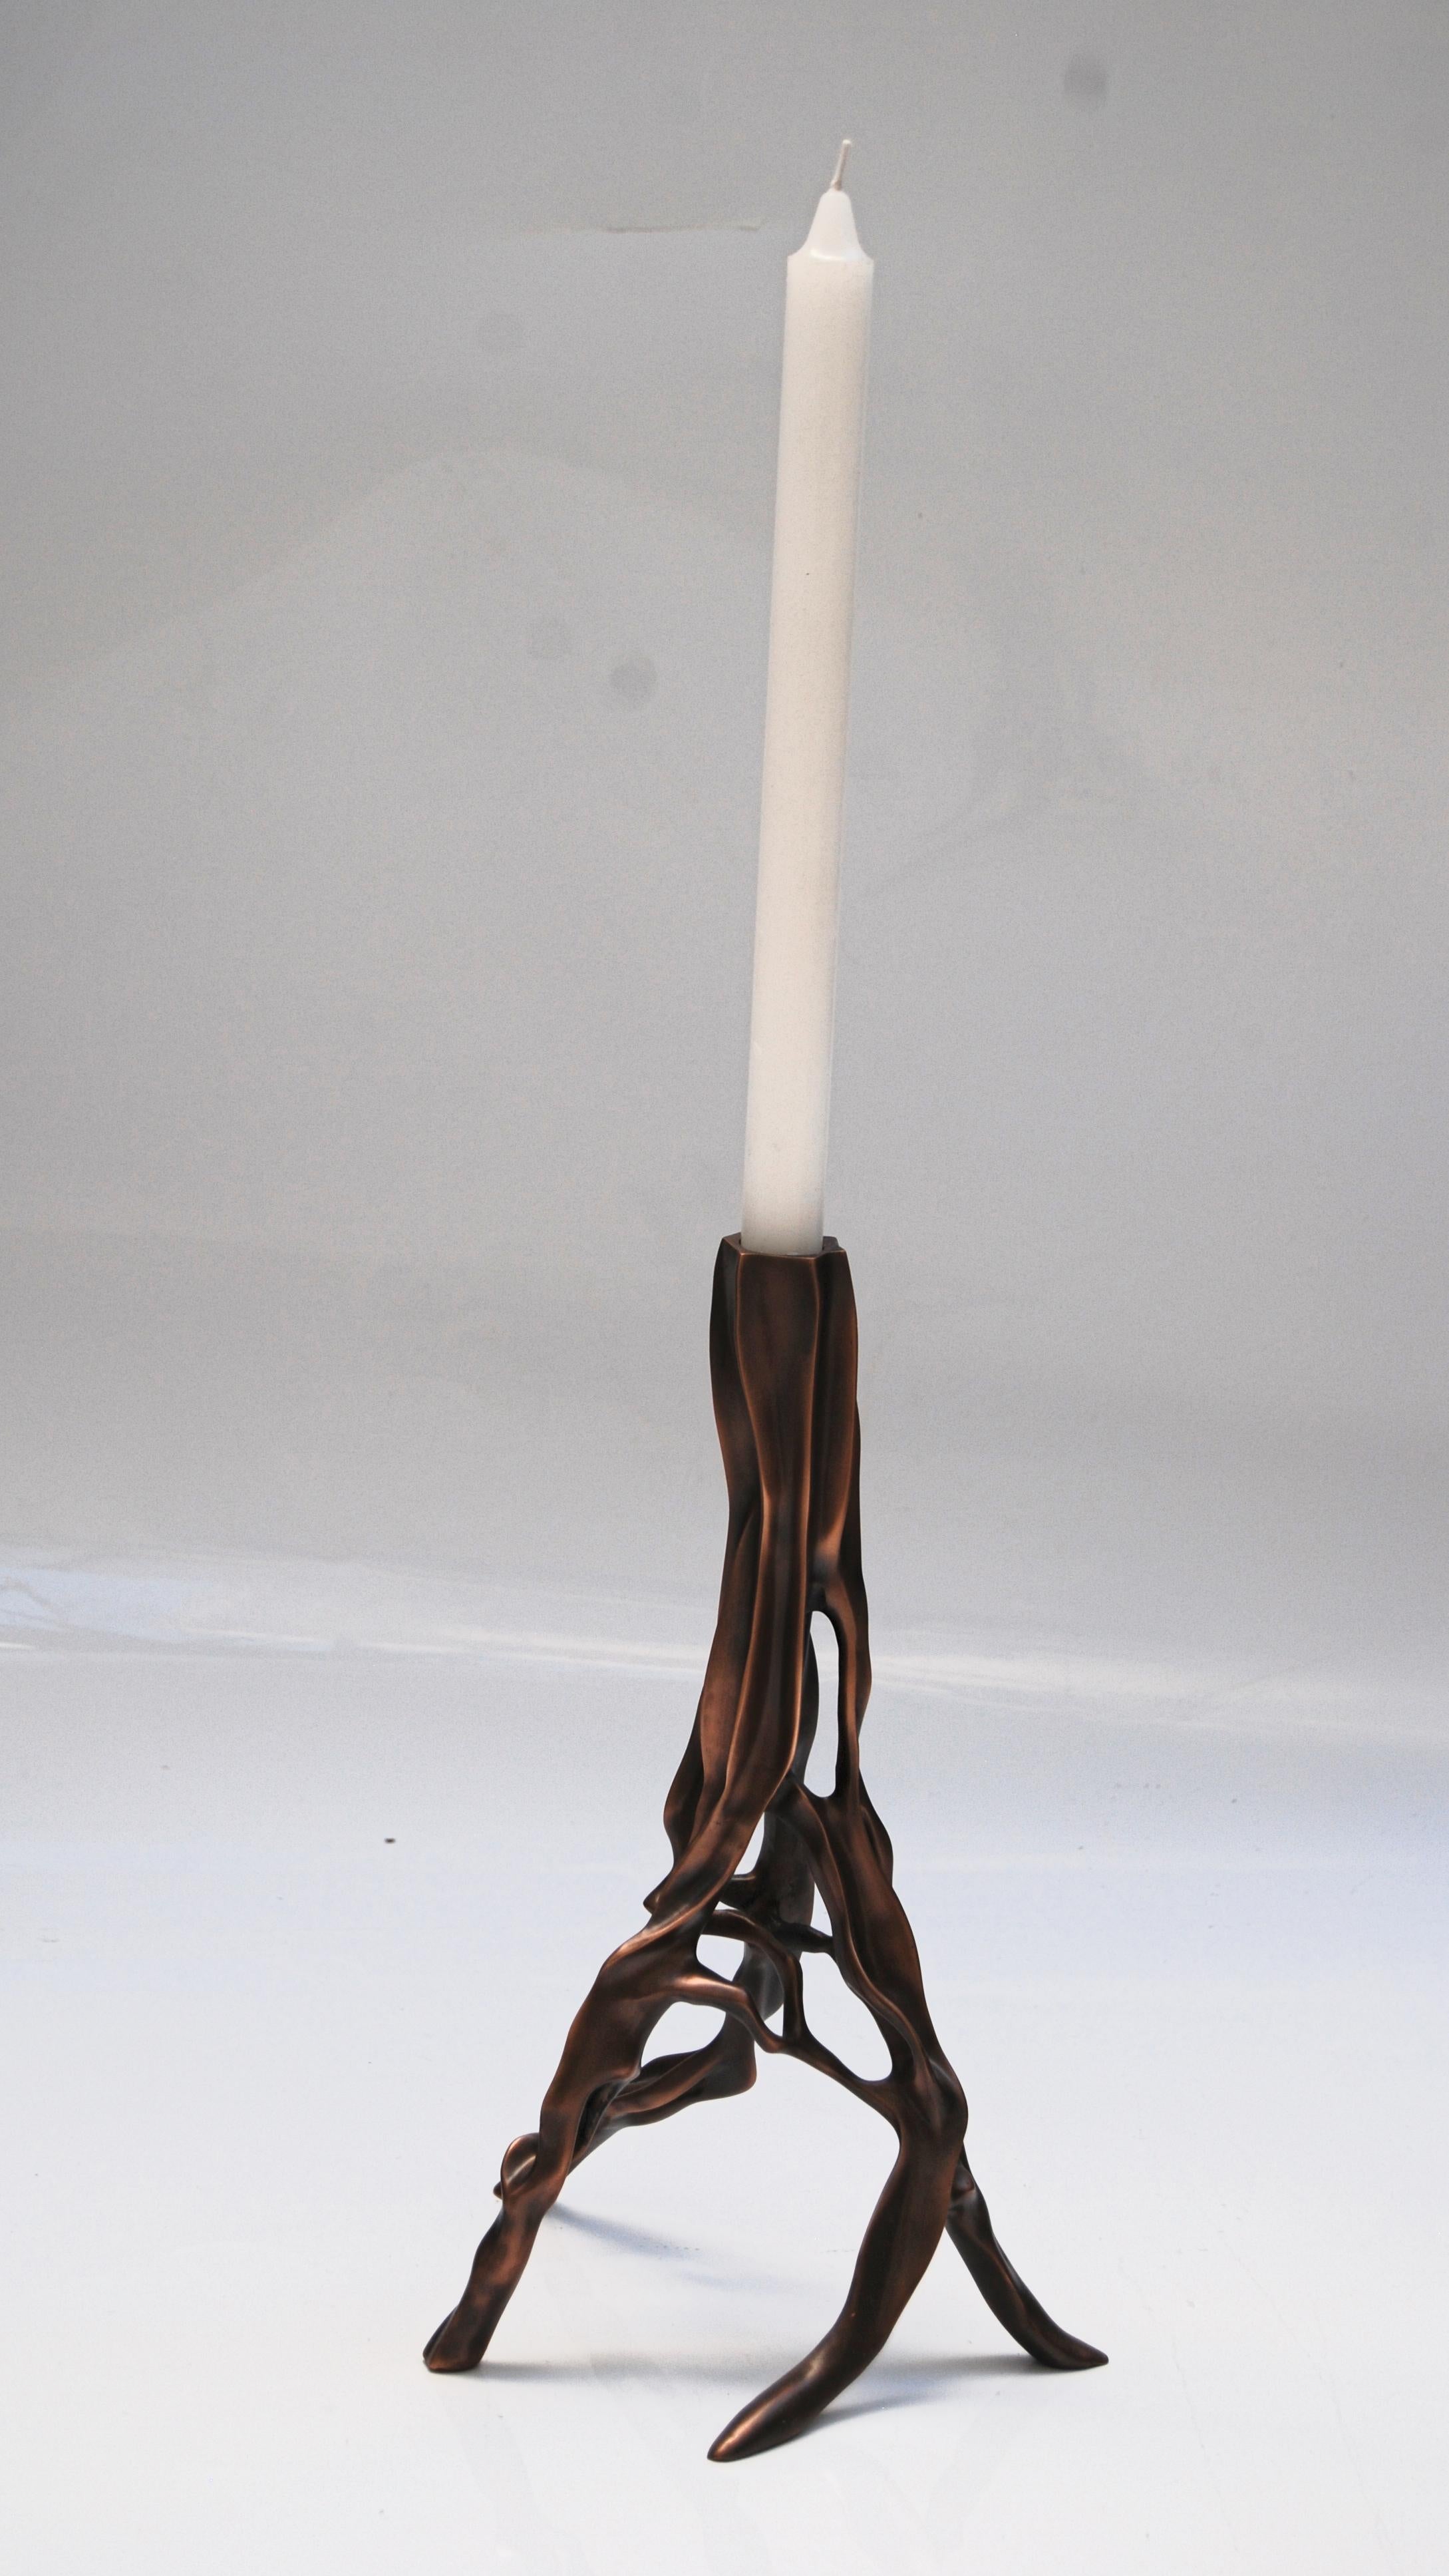 Kerzenständer aus dunkler Bronze von FAKASAKA Design
Abmessungen: B 20 x T 19 x H 30,5 cm
MATERIALIEN: Dunkle Bronze.
 